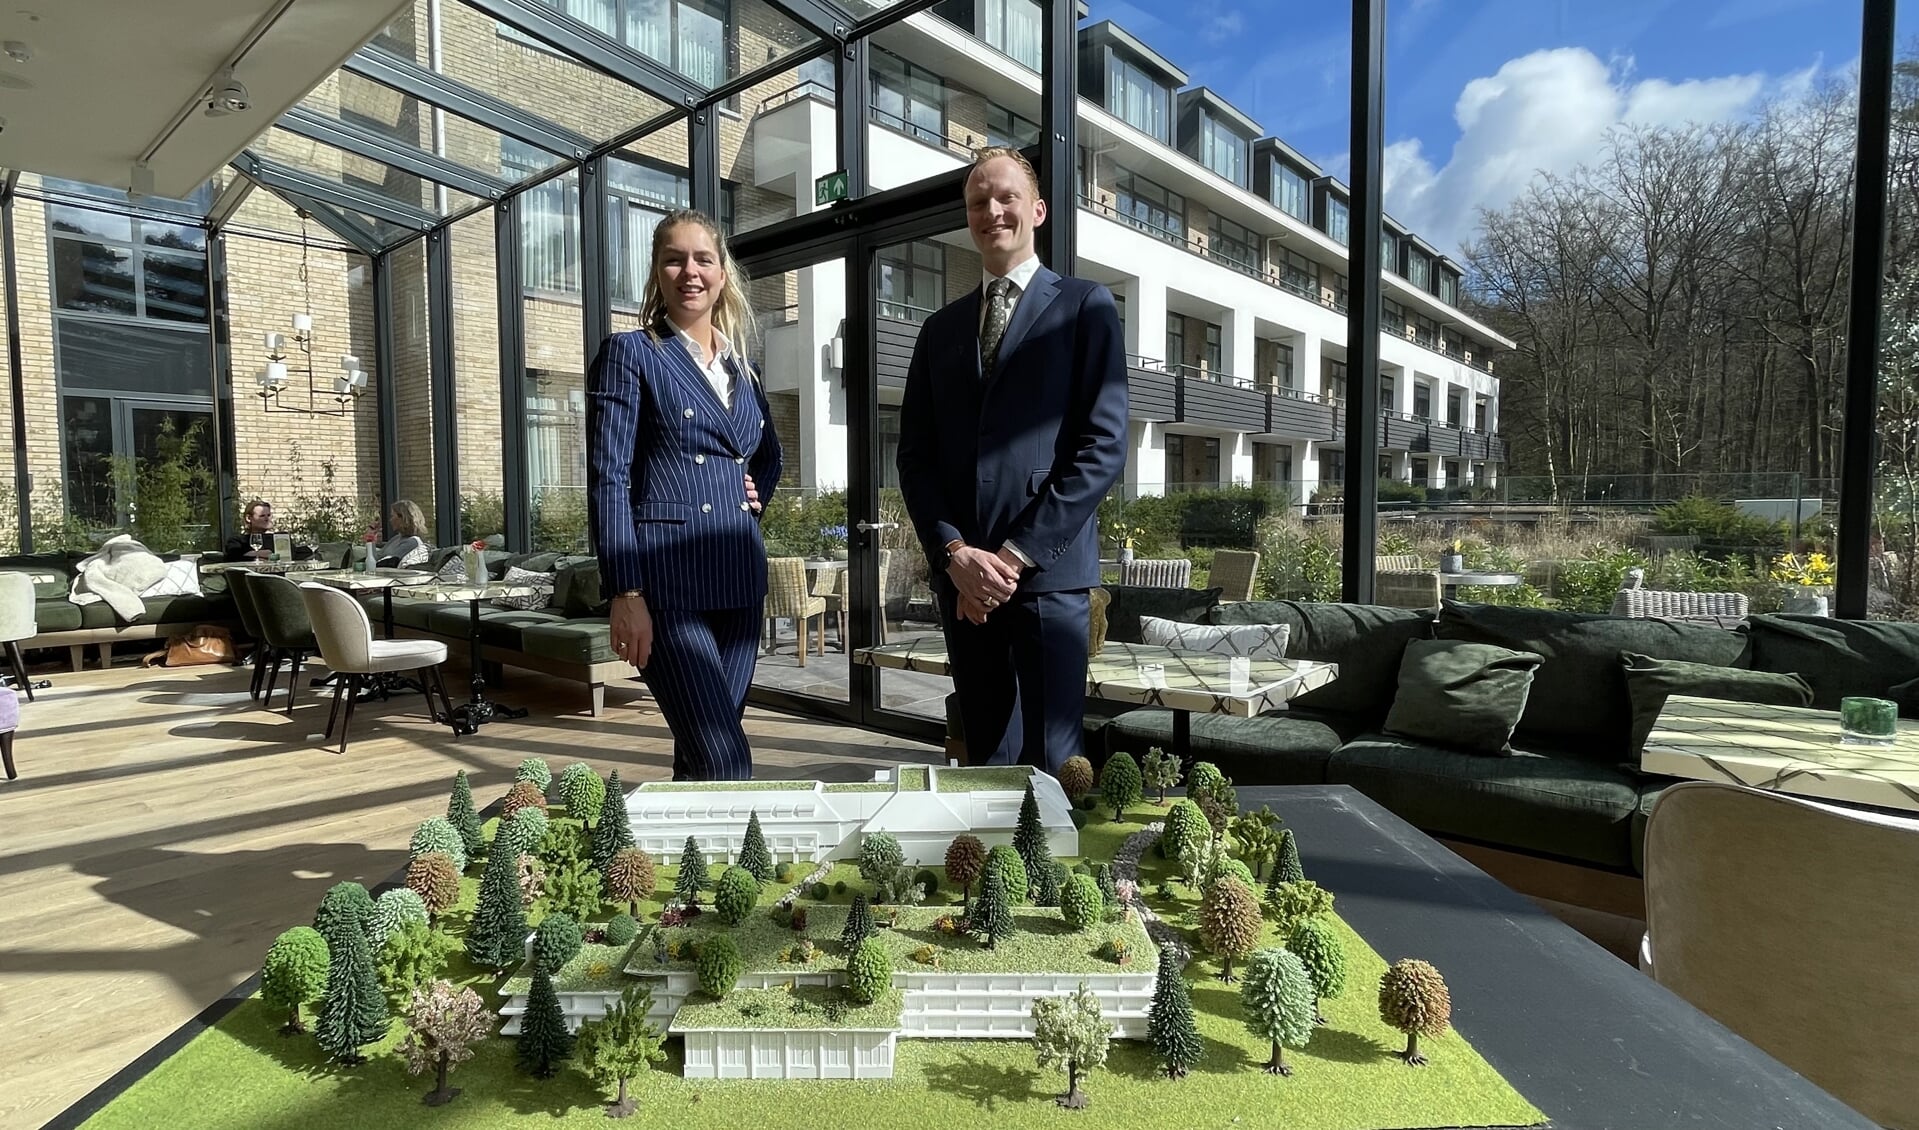 Chrissy en Koen van der Valk met de maquette voor de nieuwbouw (voorgrond) achter de bestaande locatie.